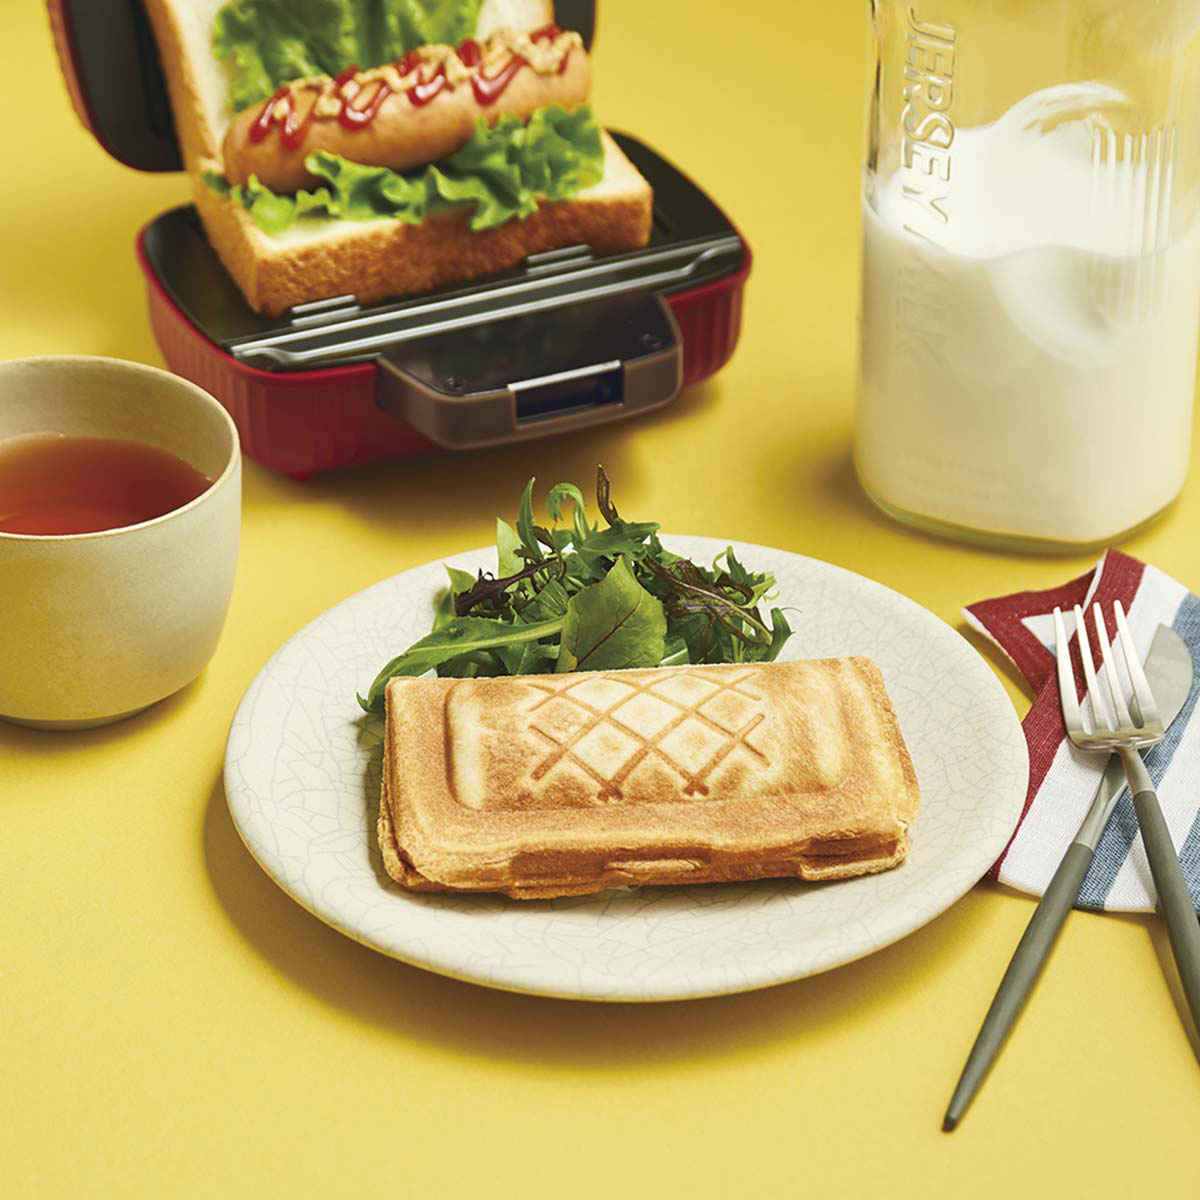 プレスサンドメーカー ミニ ホットサンドメーカー 1枚焼き レシピブック付 食パン プレート固定式 食パン 朝ごはん おやつ かわいい レッド